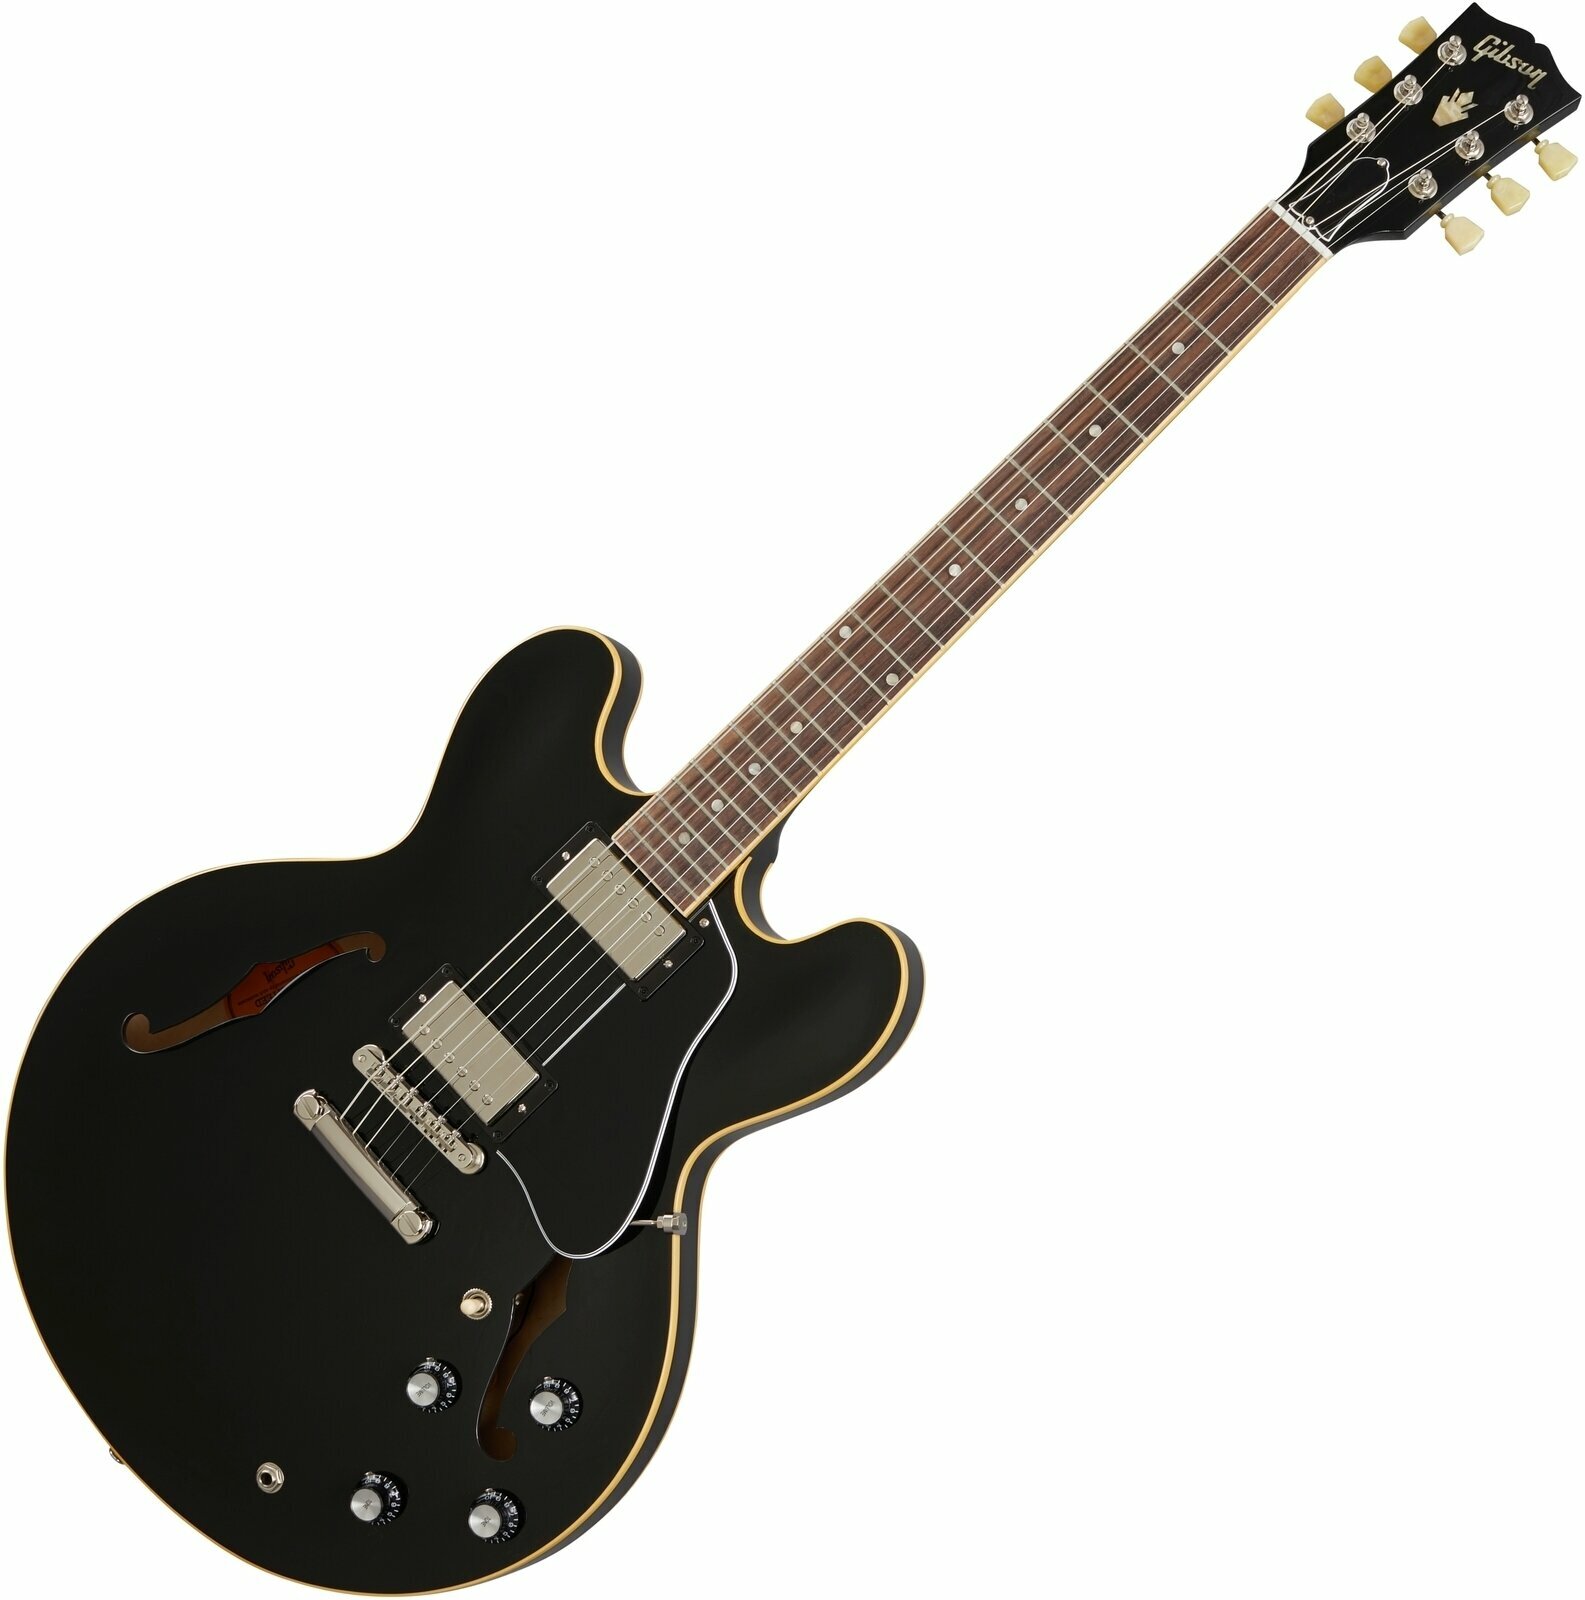 Semiakustická kytara Gibson ES-335 Vintage Ebony